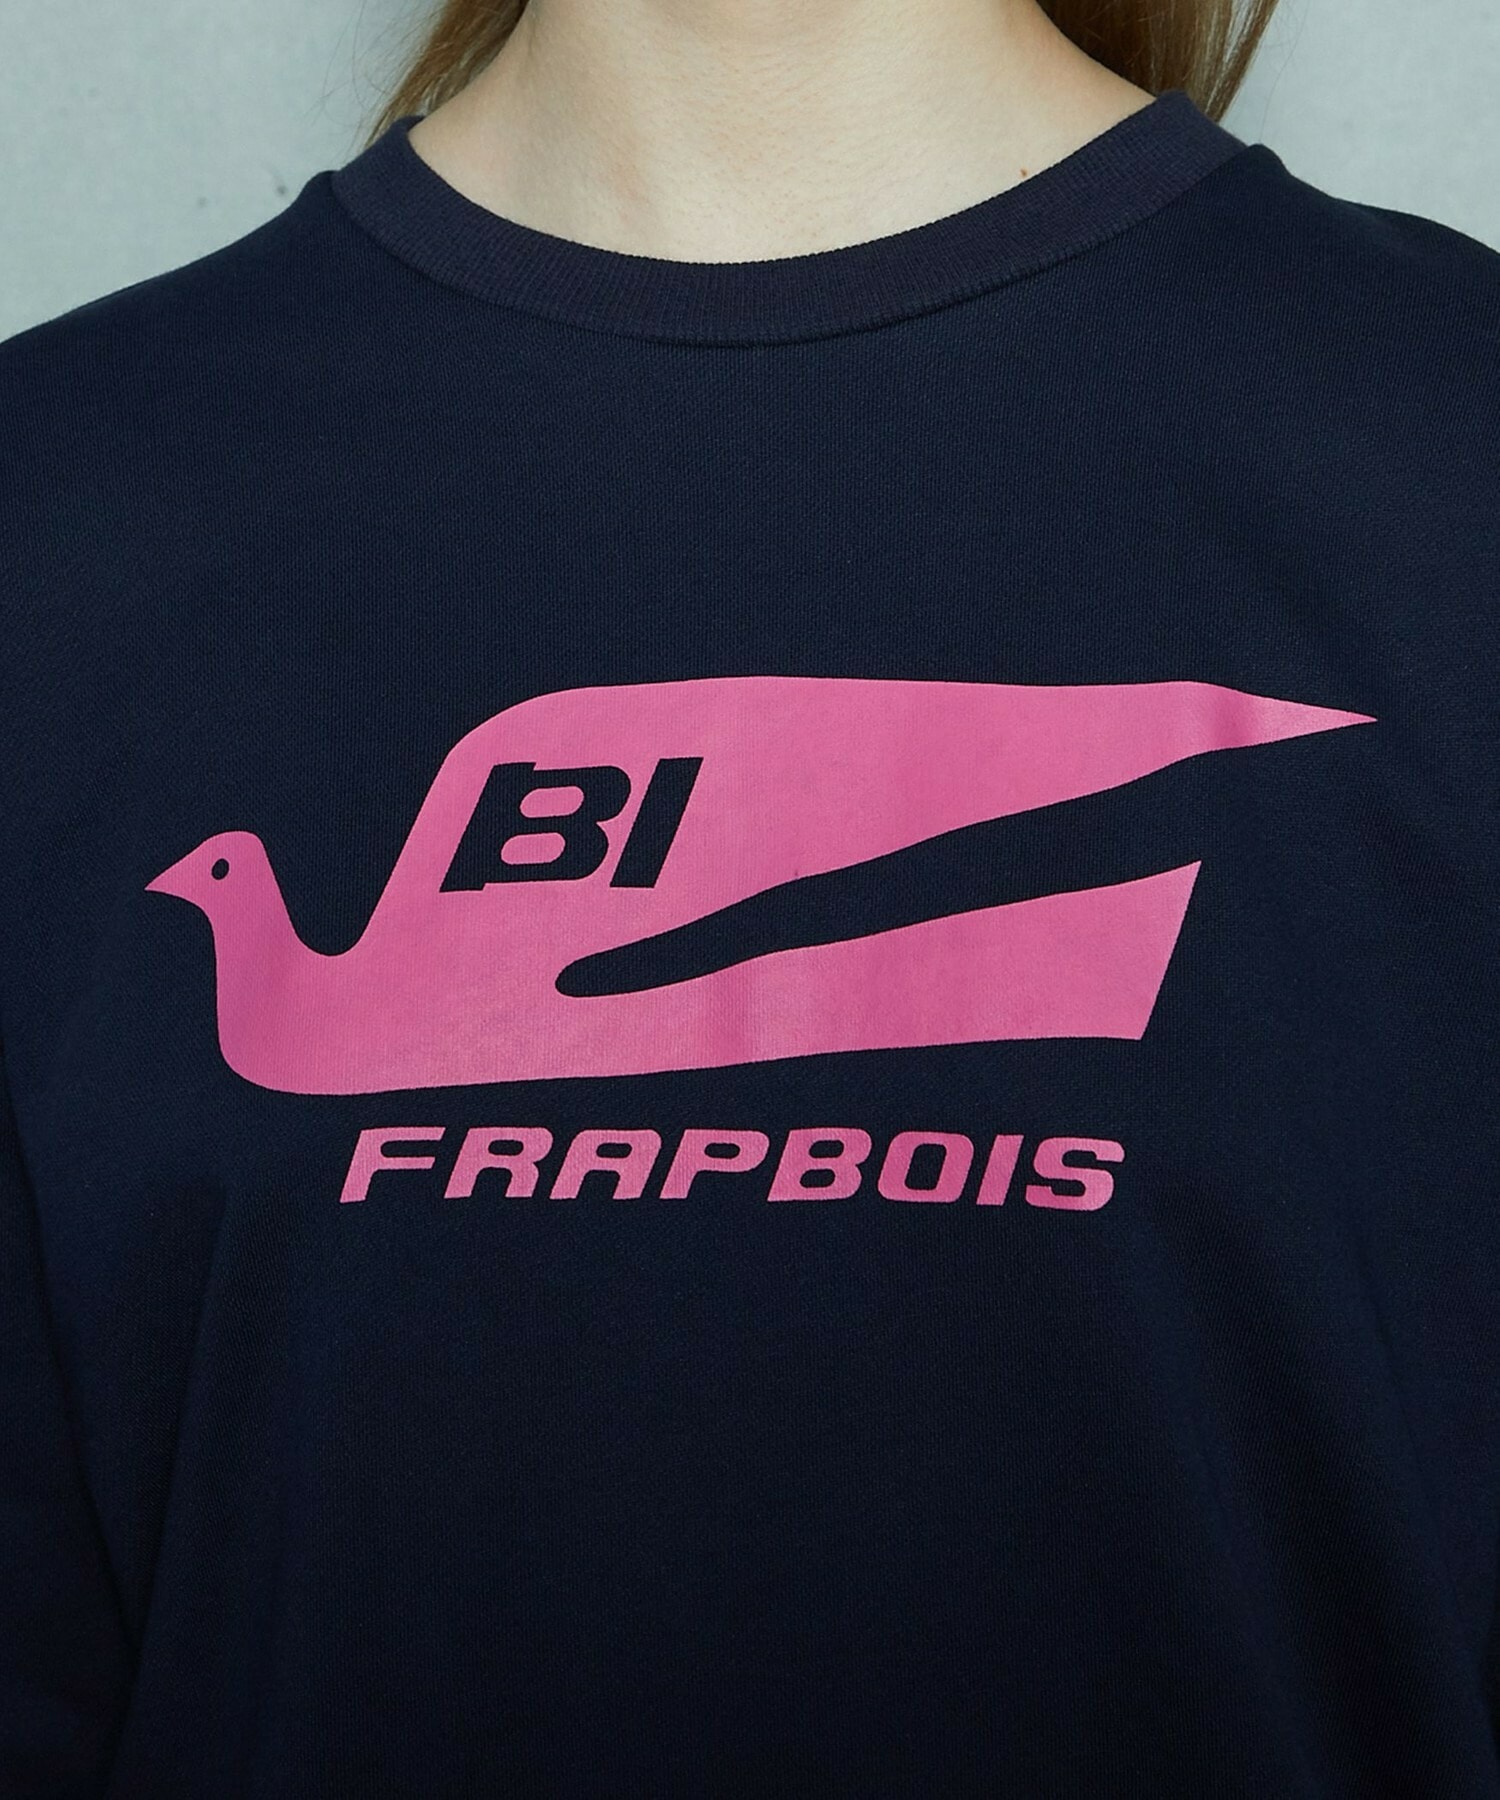 【FRAPBOIS】FRAPBOIS×BRANIFF INTERNATIONAL スウェット 詳細画像 ネイビー 8